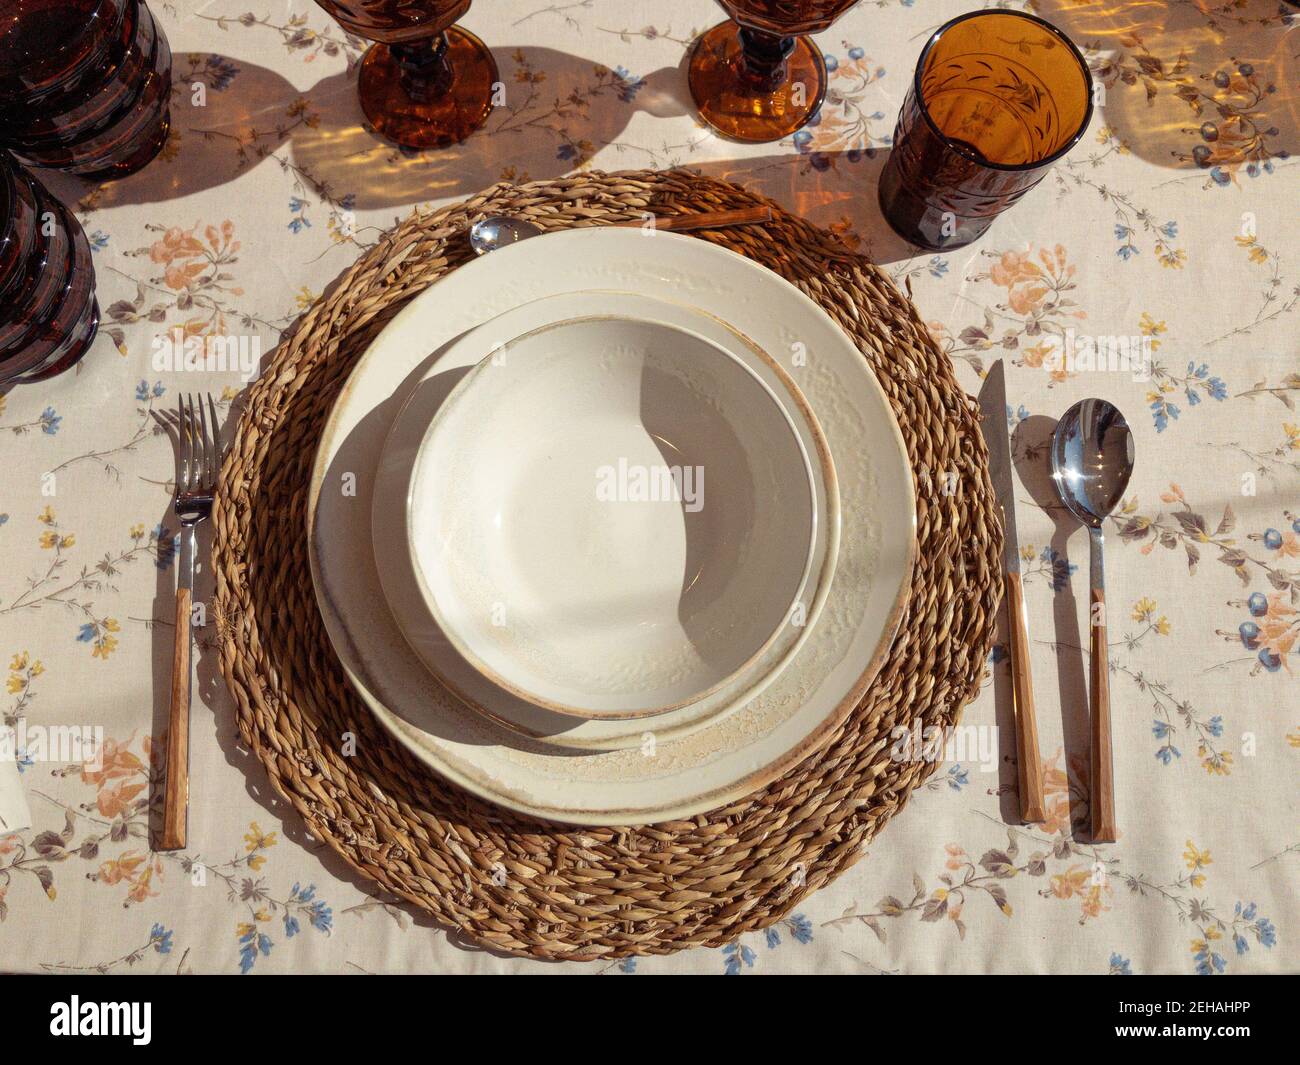 Draufsicht zum Aufstellen des Tisches mit Vintage-Keramikgeschirr Auf floralem Muster Geschirr sonnigen Tag Stockfoto